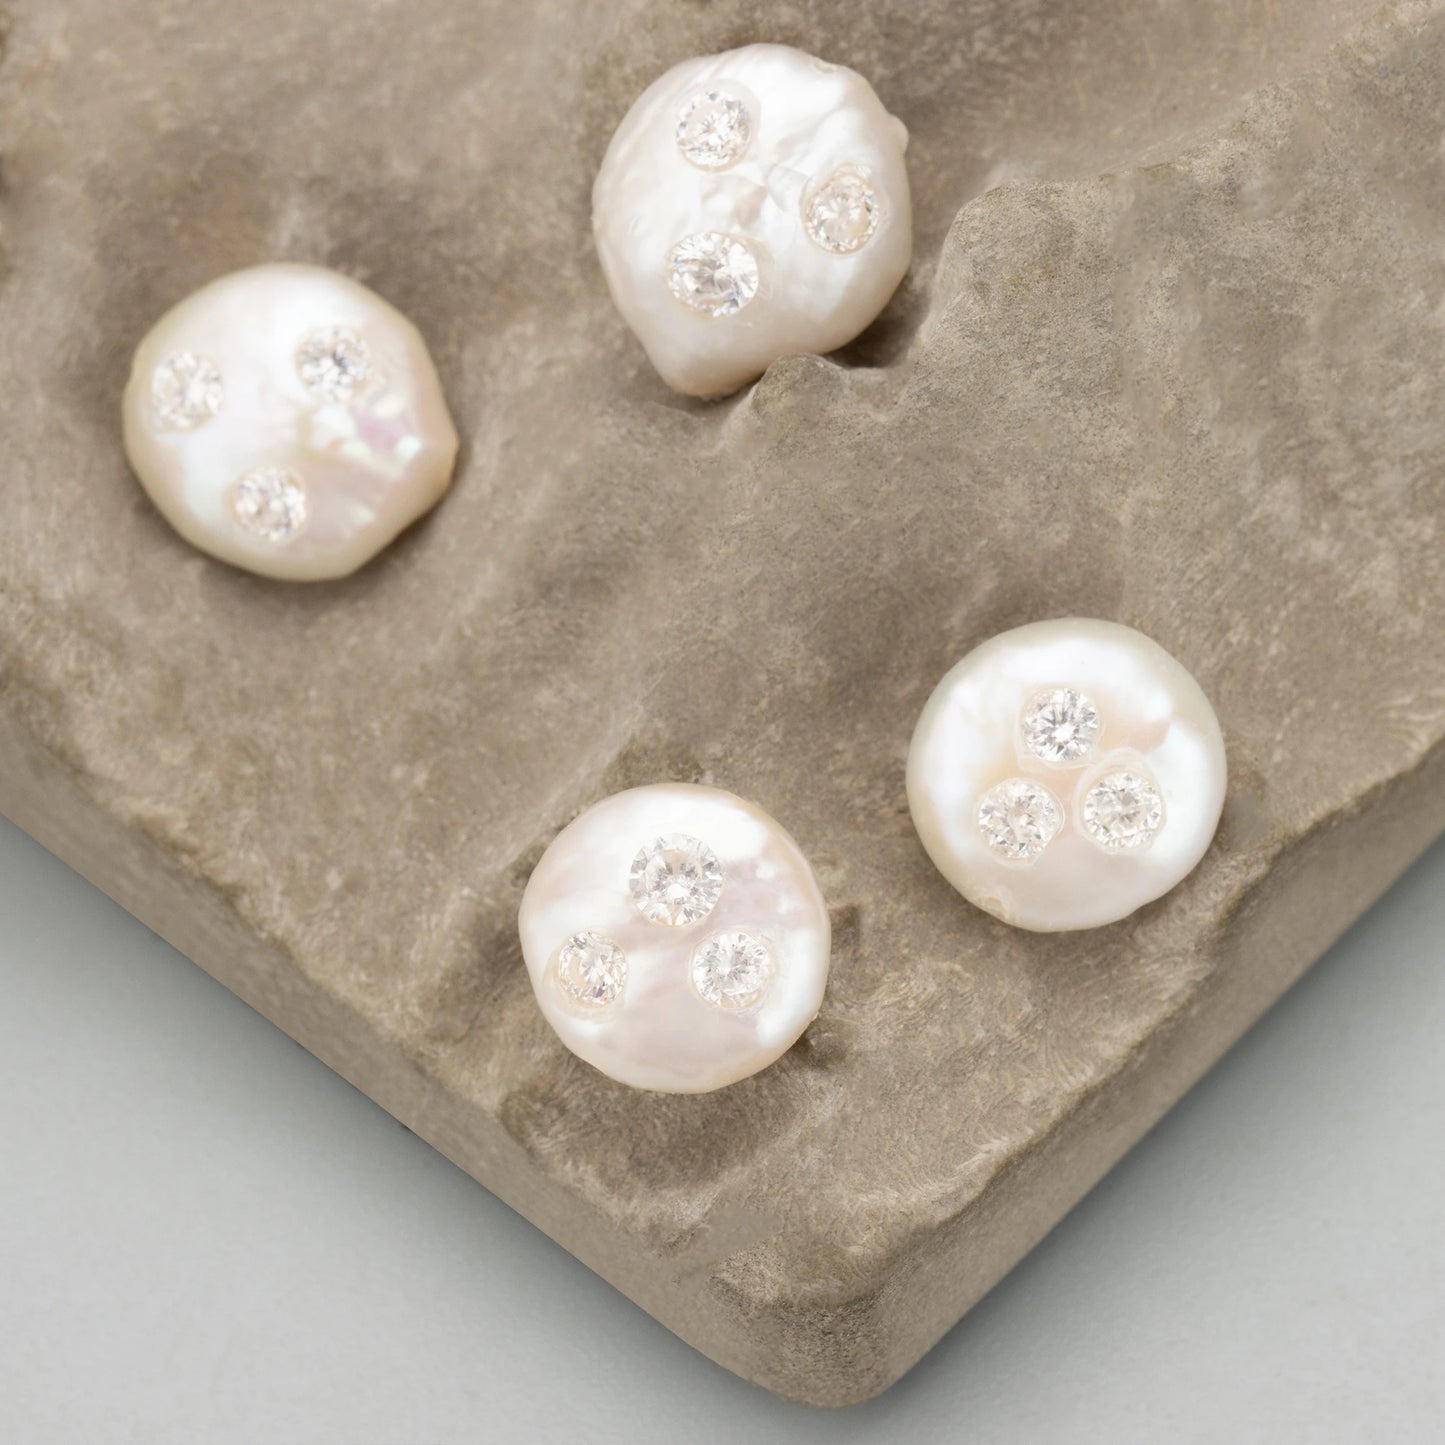 GUFEATHER ME02, accesorios de joyería, perlas naturales, hechas a mano, perlas con circonitas, fabricación de joyas, dijes, colgantes diy, 2 unids/lote 